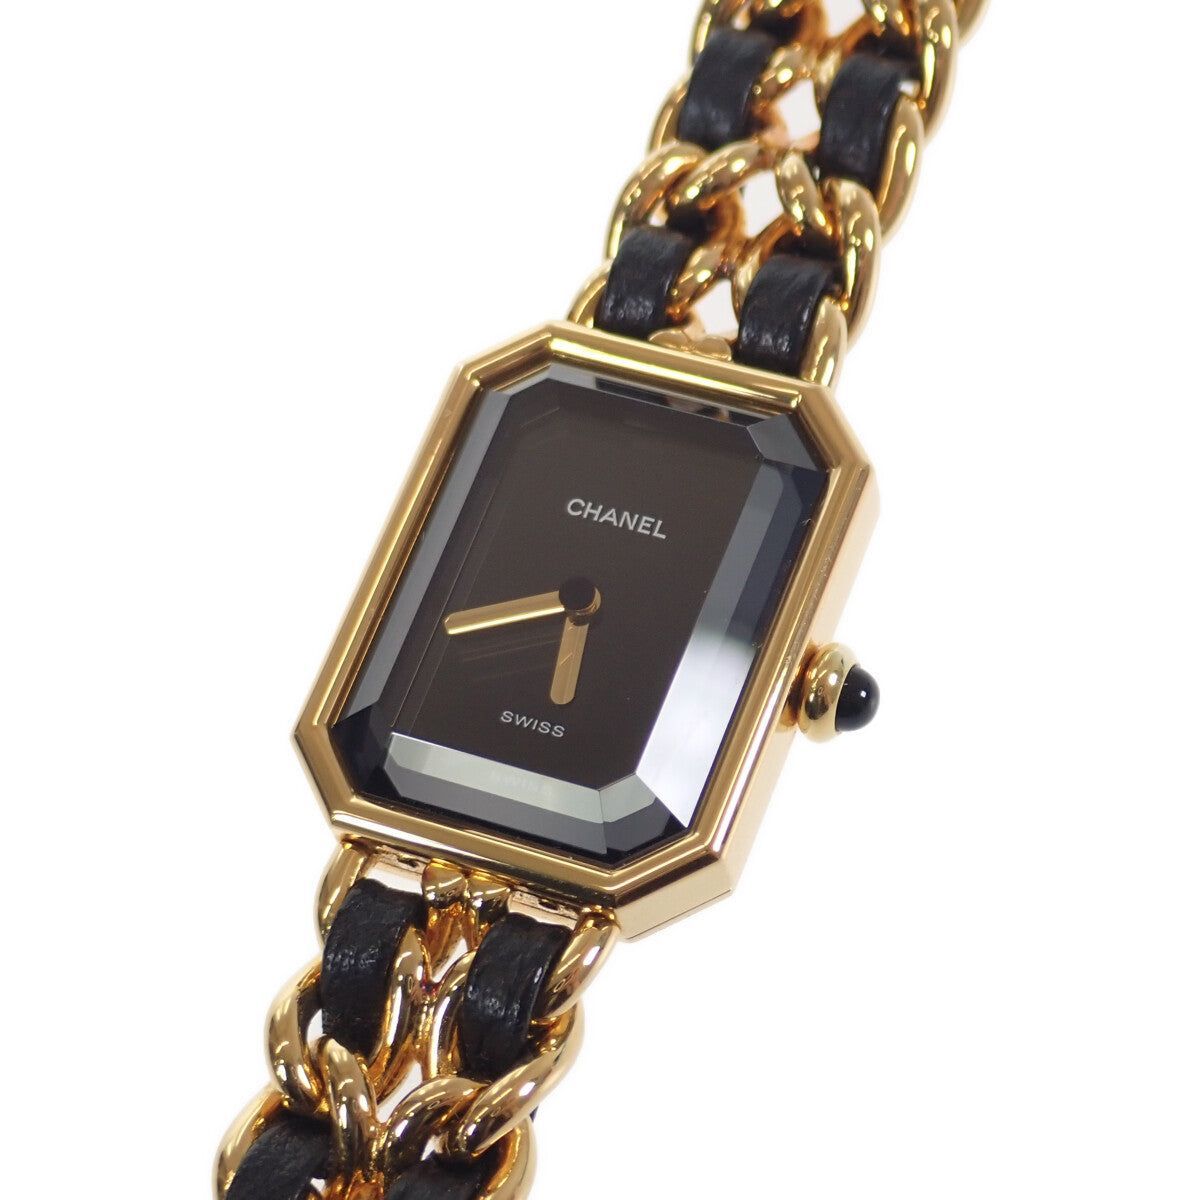 CHANEL プルミエール レディース 腕時計 H0001 GP レザー 黒 ブラック文字盤 Lサイズ クォーツ ゴールド